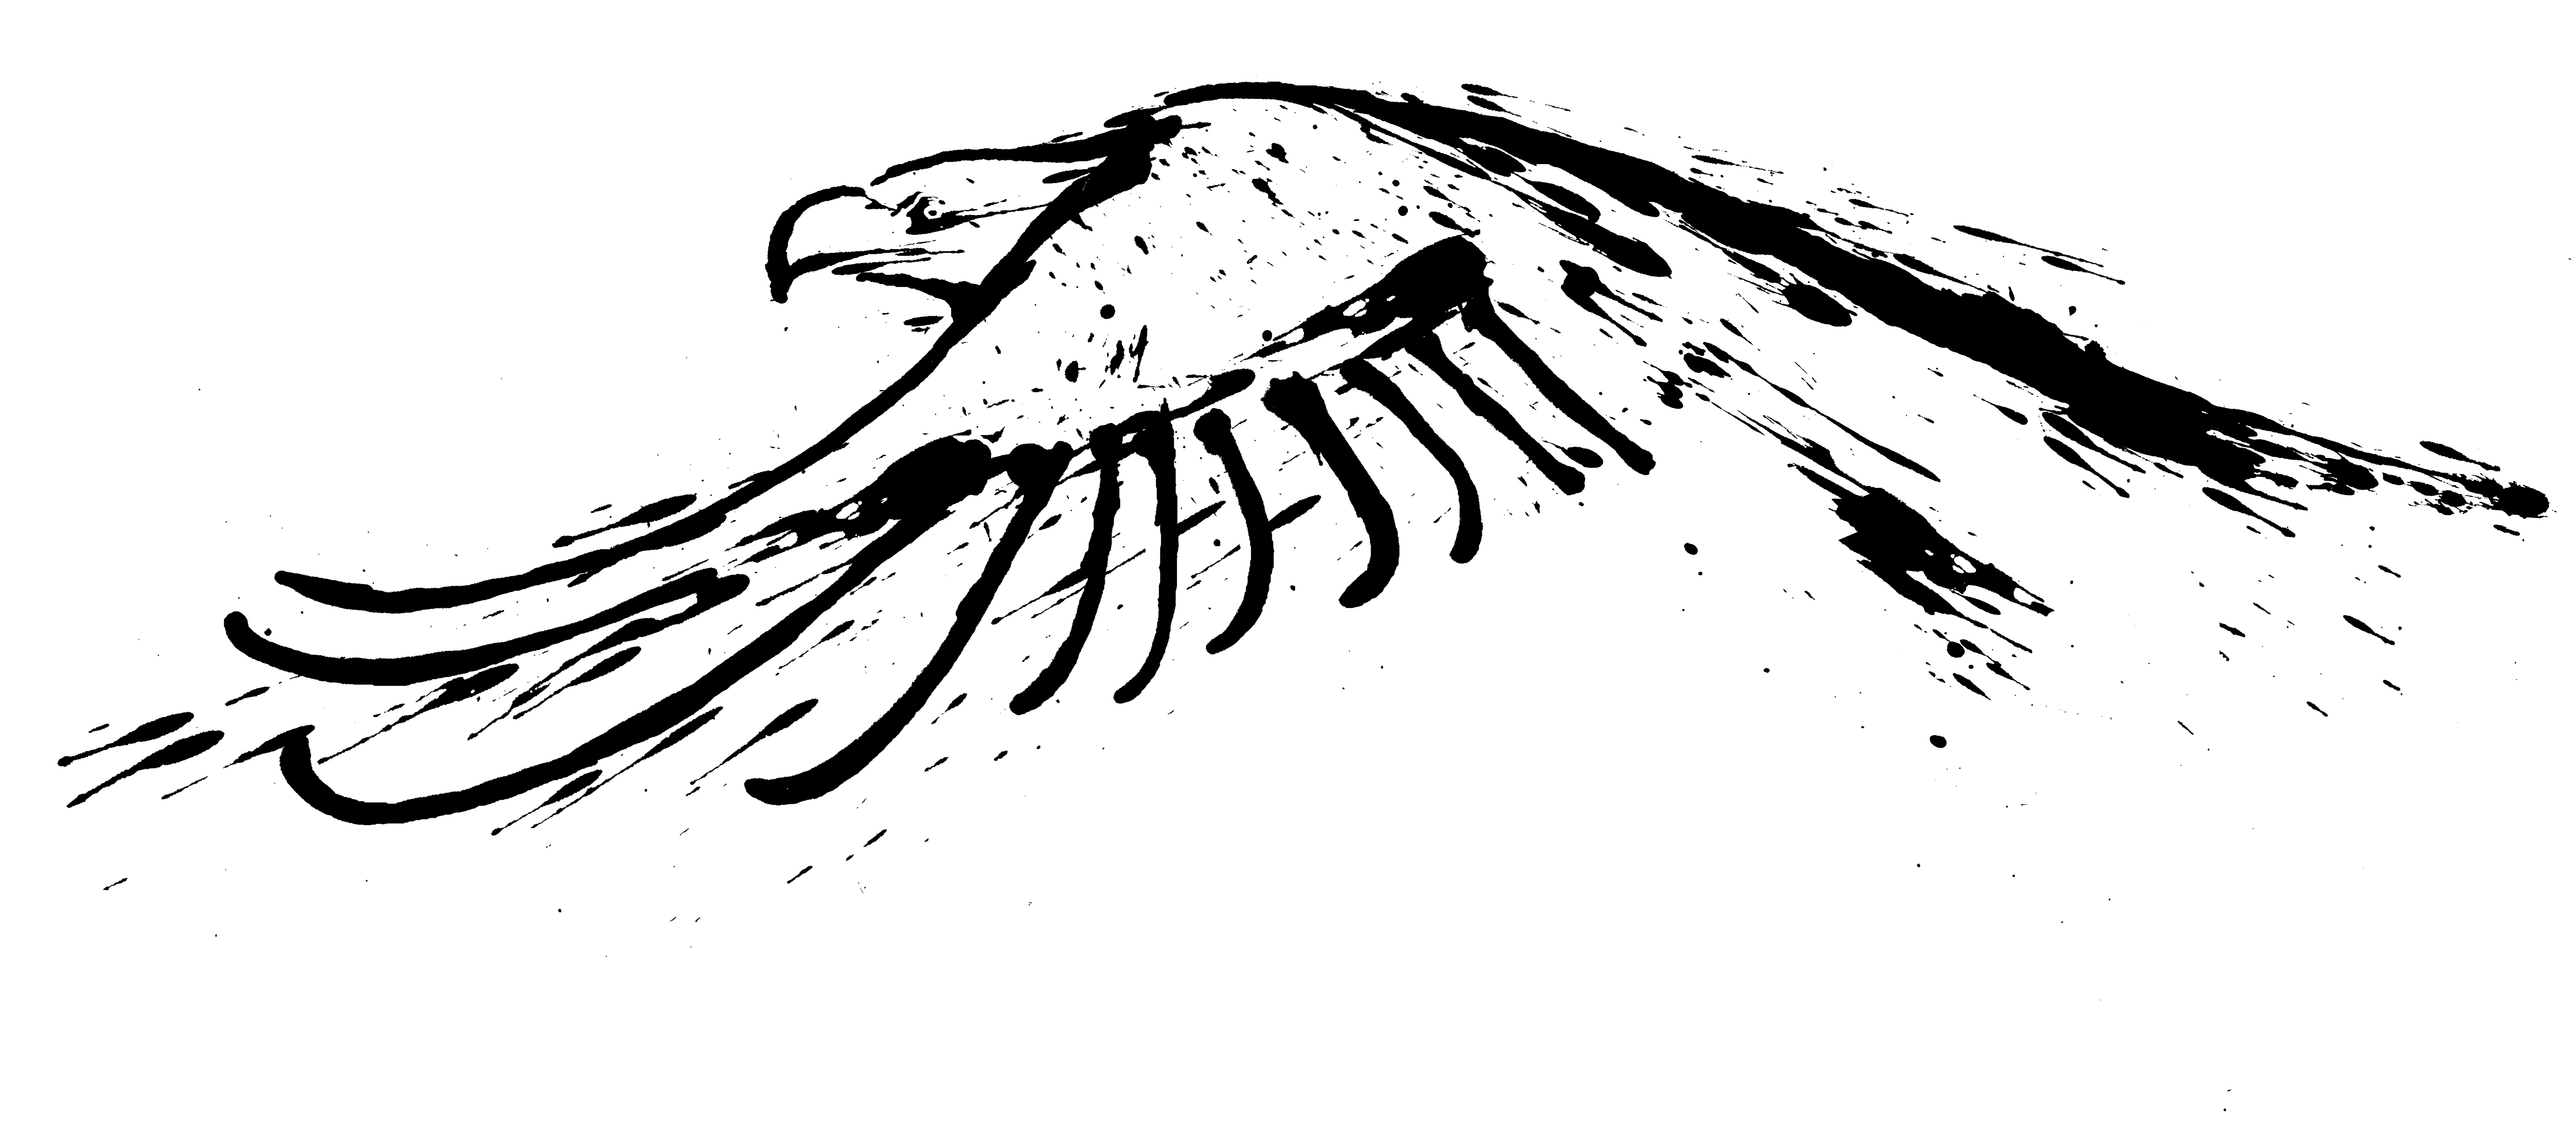 Eagle Graphic Design Logo